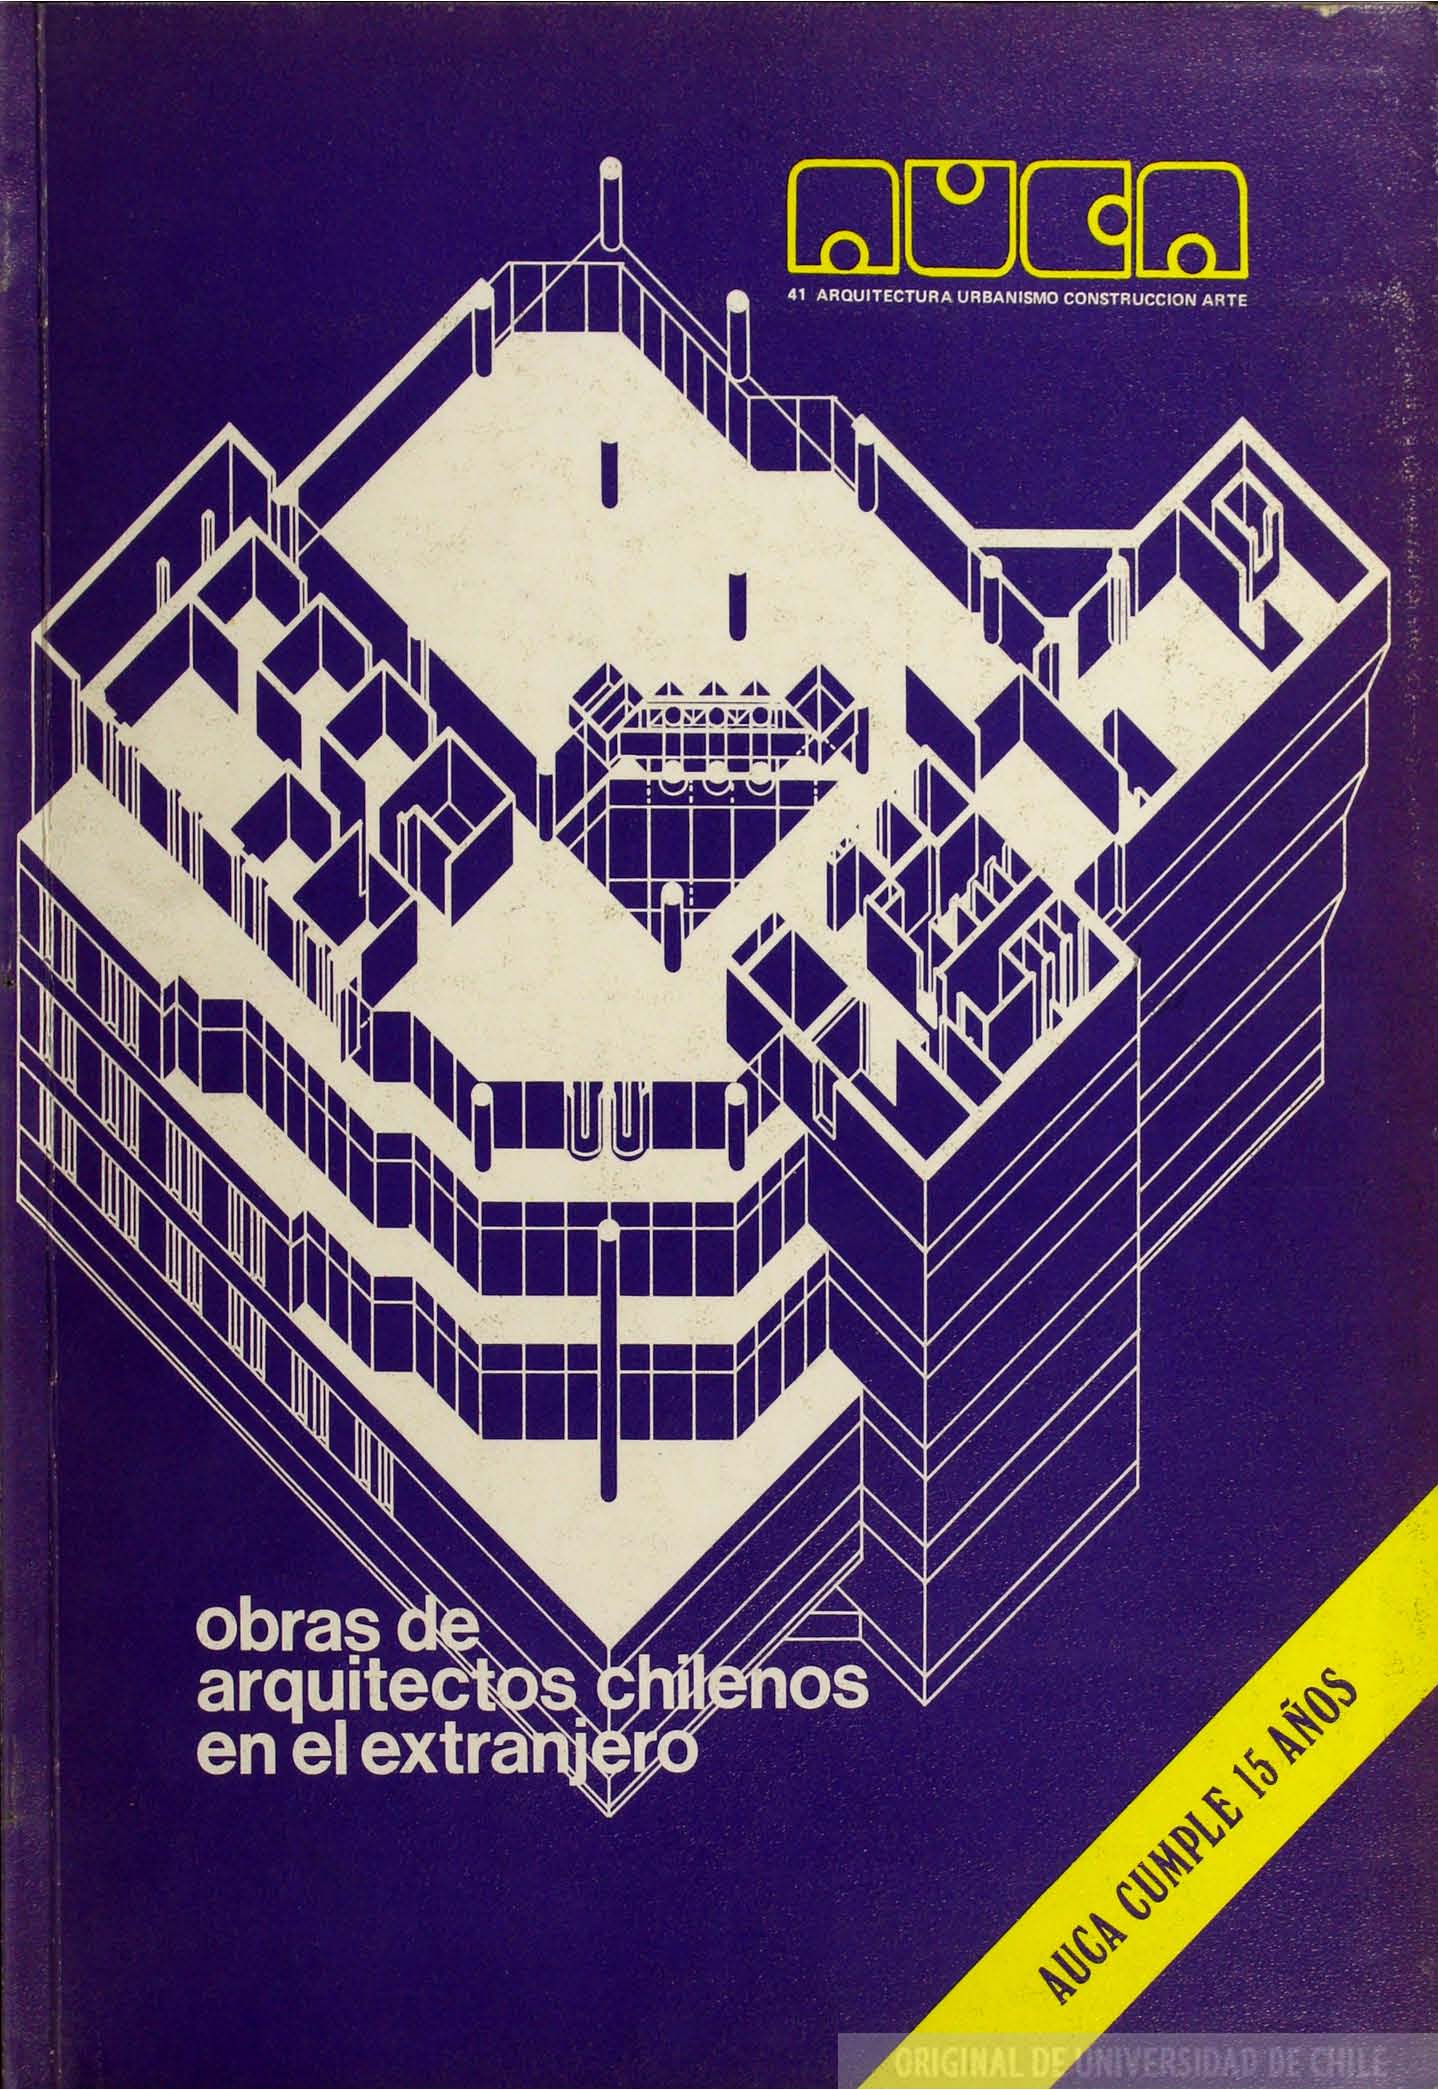 											Ver Núm. 41 (1981): Obras de arquitectos chilenos en el extranjero
										